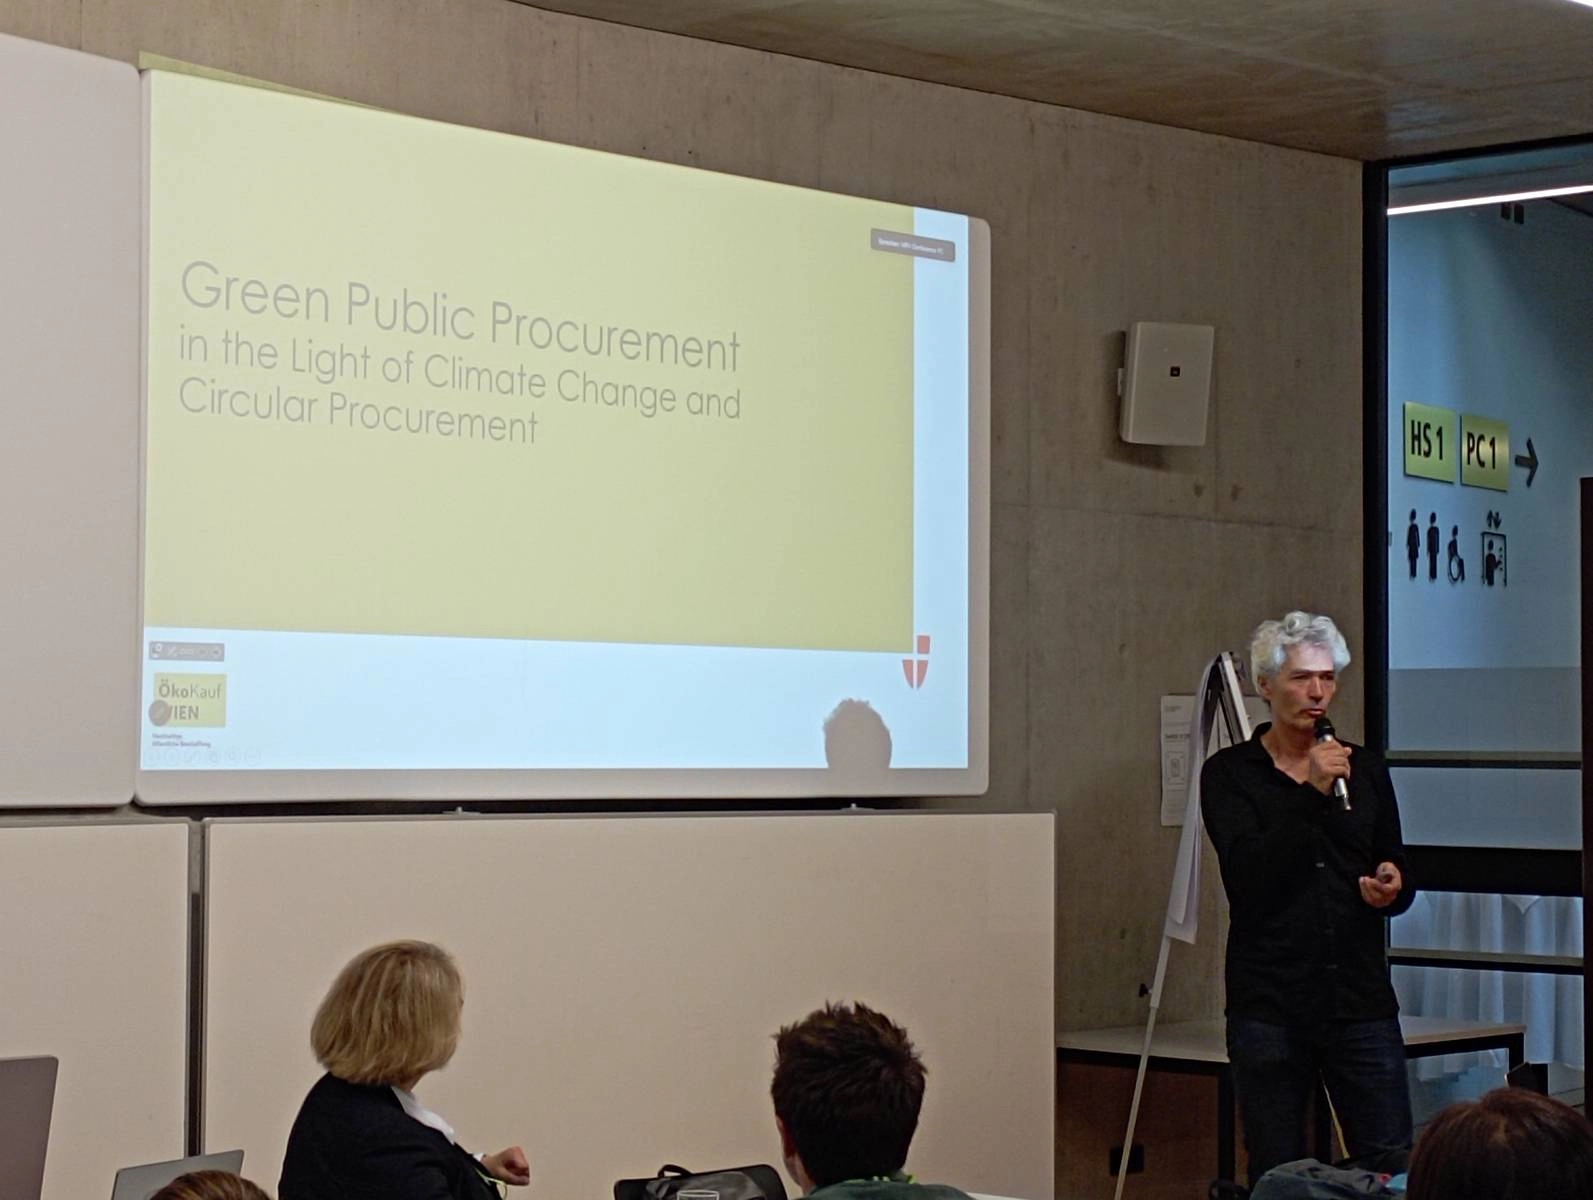 奧地利維也納市政府EcoBuy 計畫(ÖkoKauf Wien) Thomas Mosor主任分享綠色公共採購做為因應氣候變遷、循環經濟與供應鏈的貢獻。